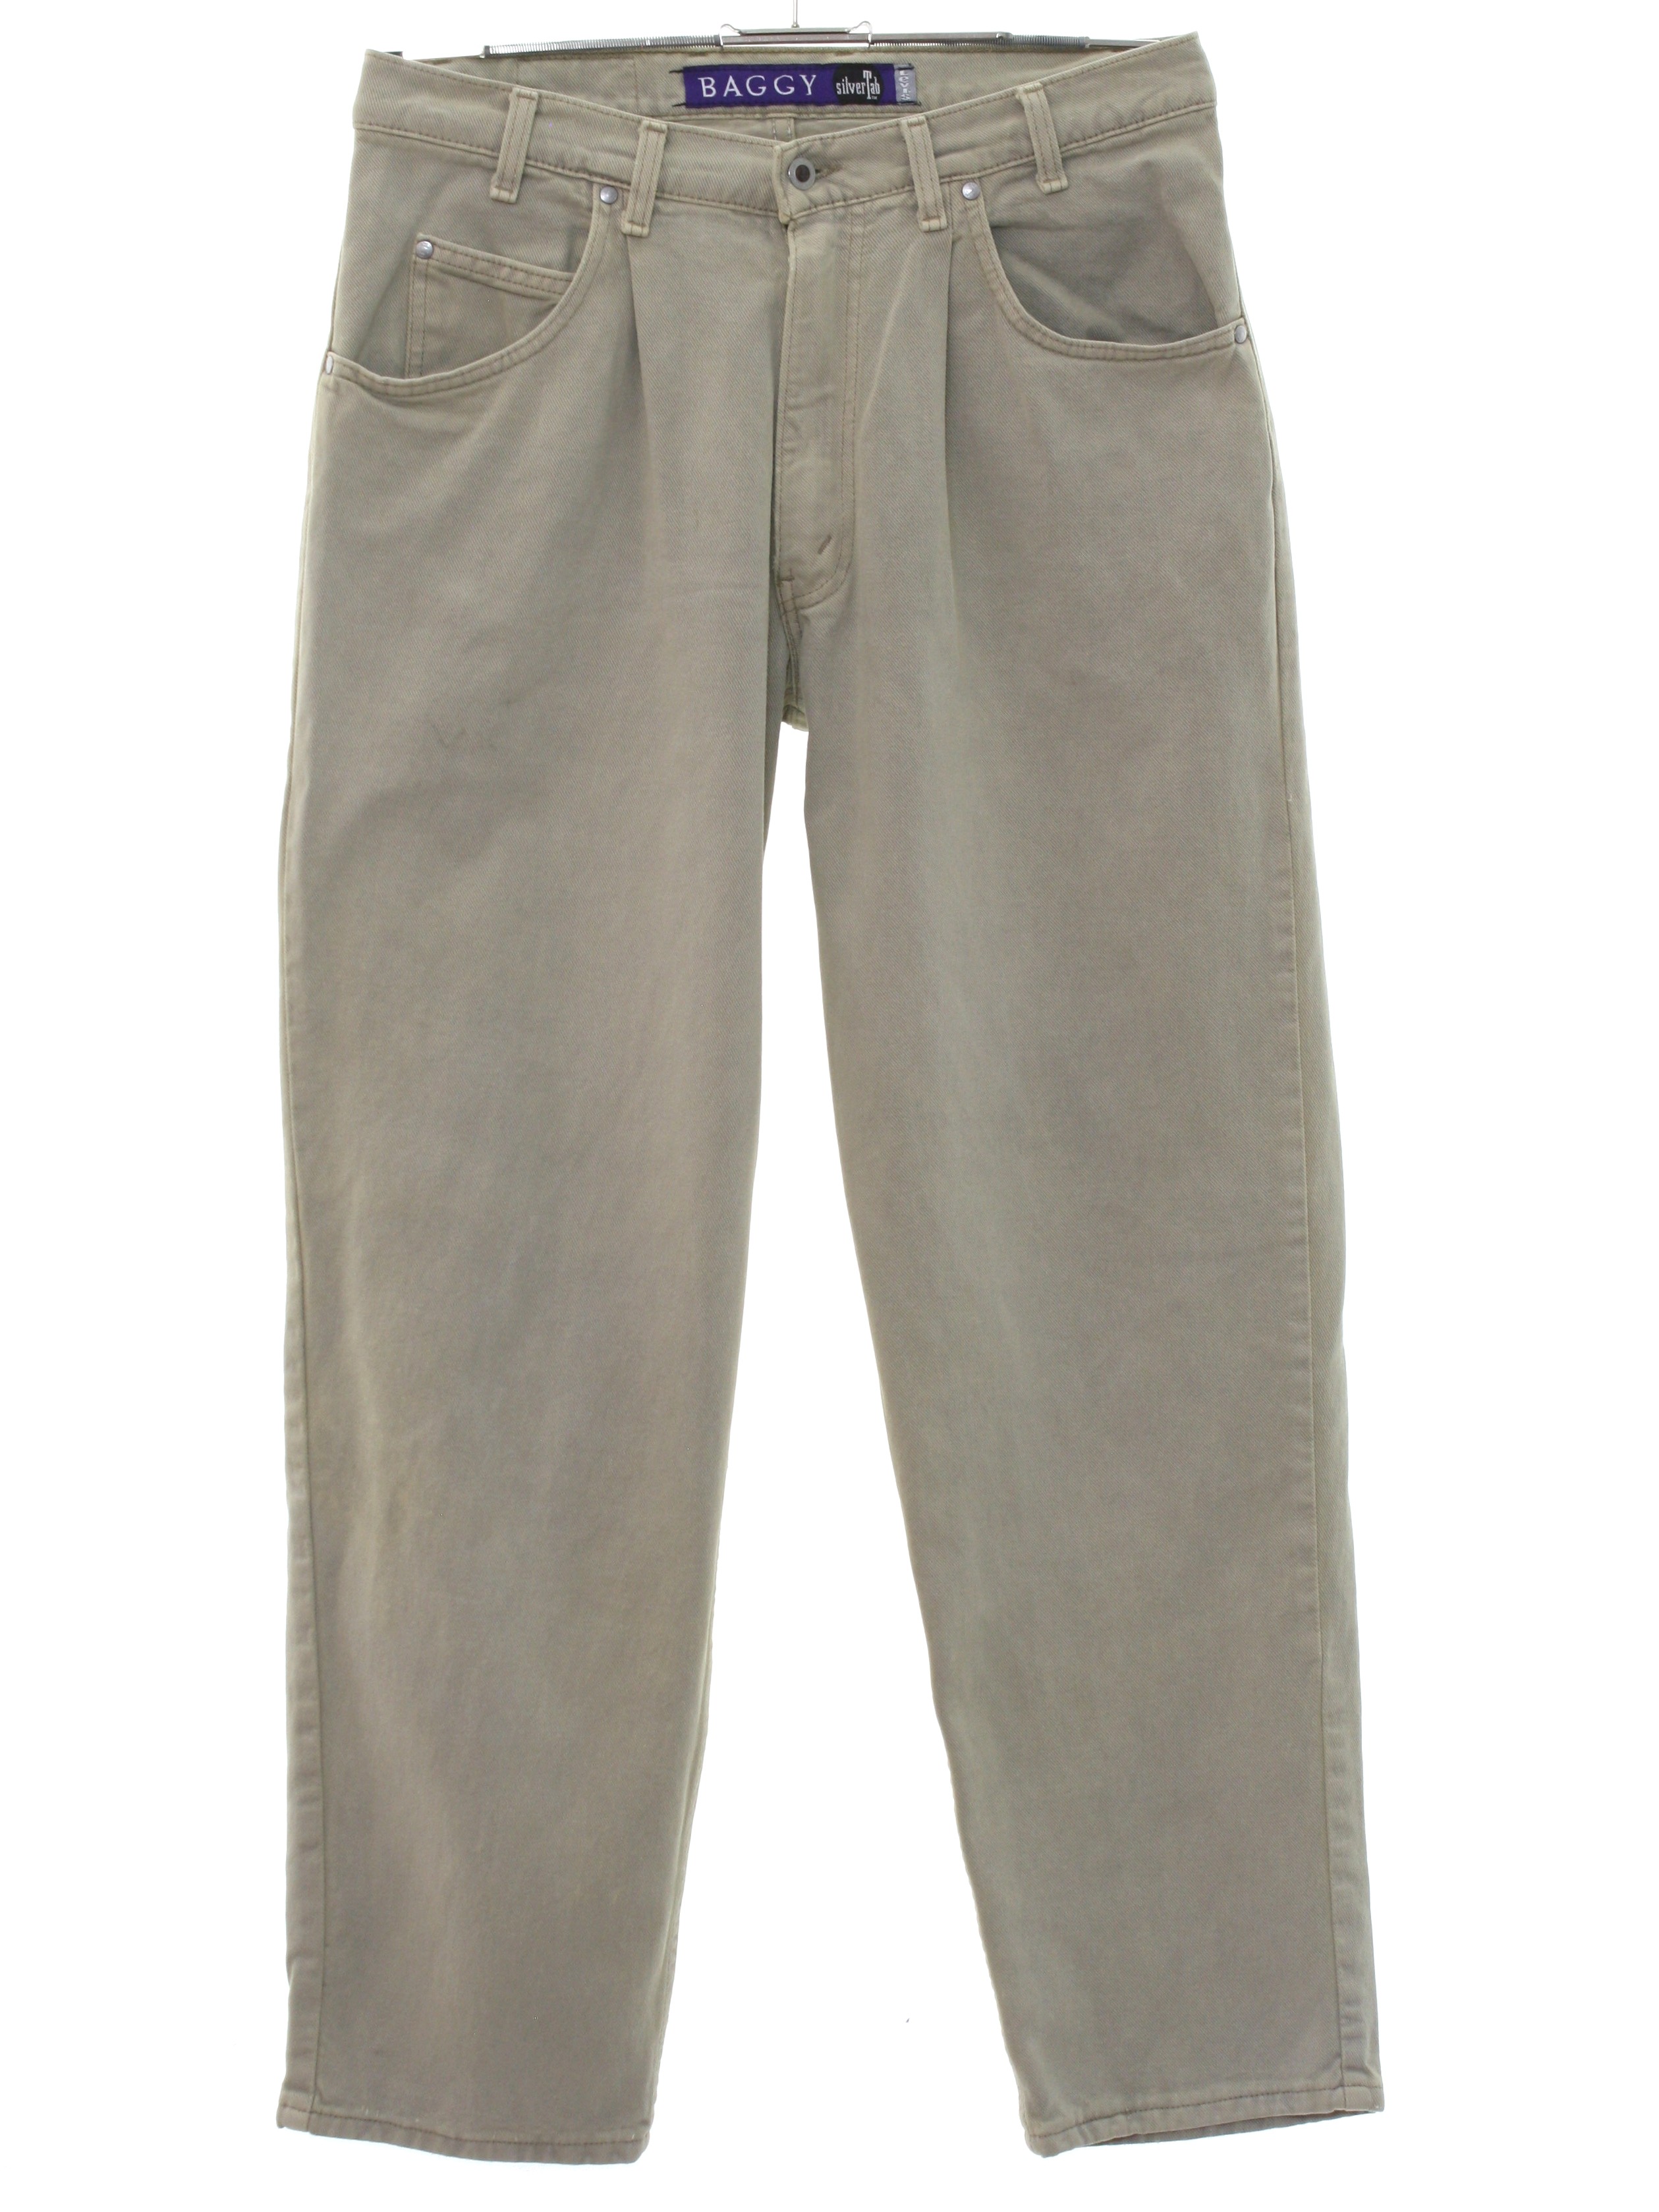 Vintage 1980's Pants: 80s -Levis Silver Tab- Mens tan cotton denim ...